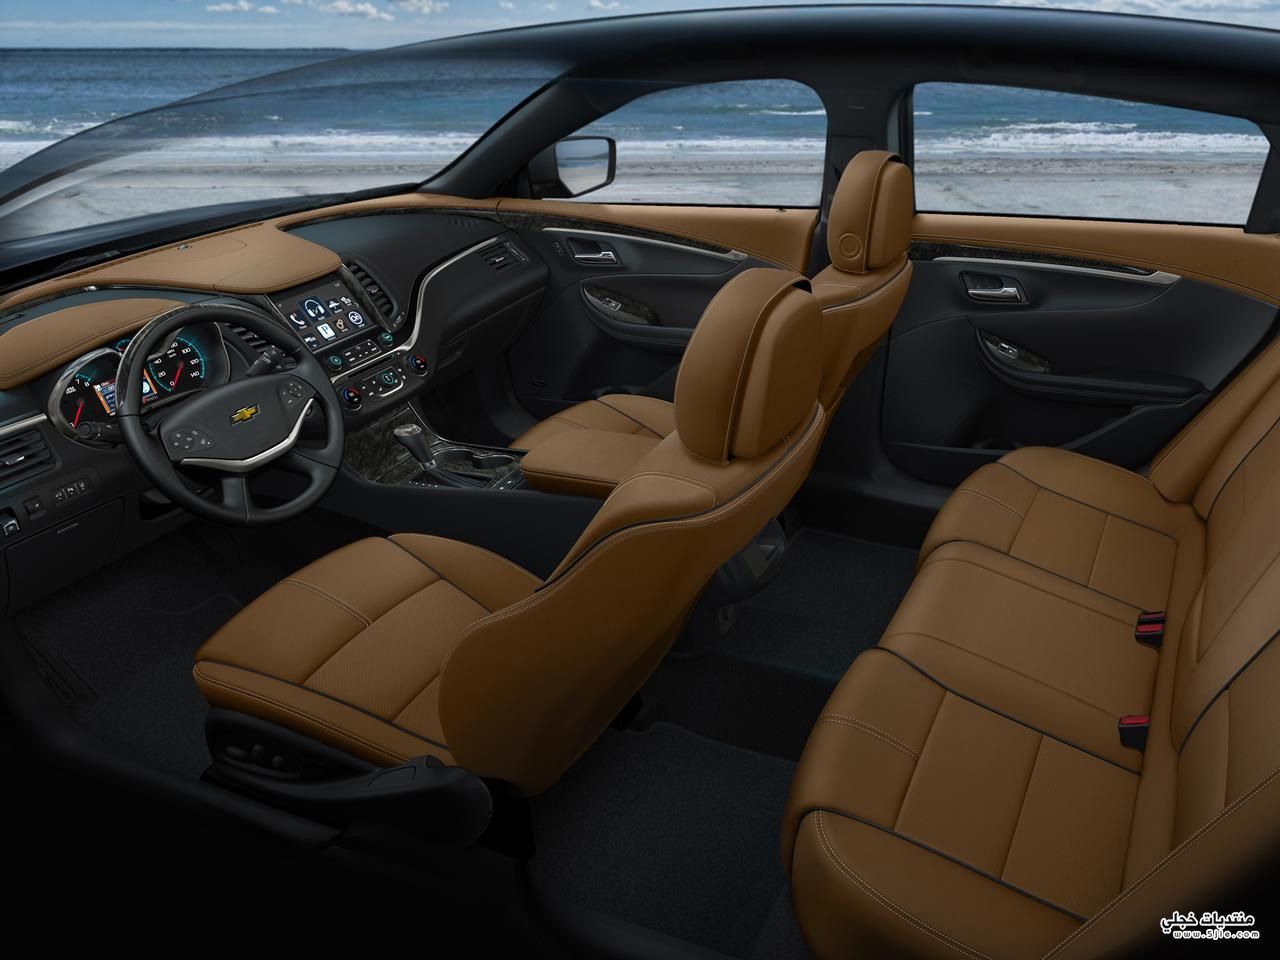   2014 Chevrolet Impala